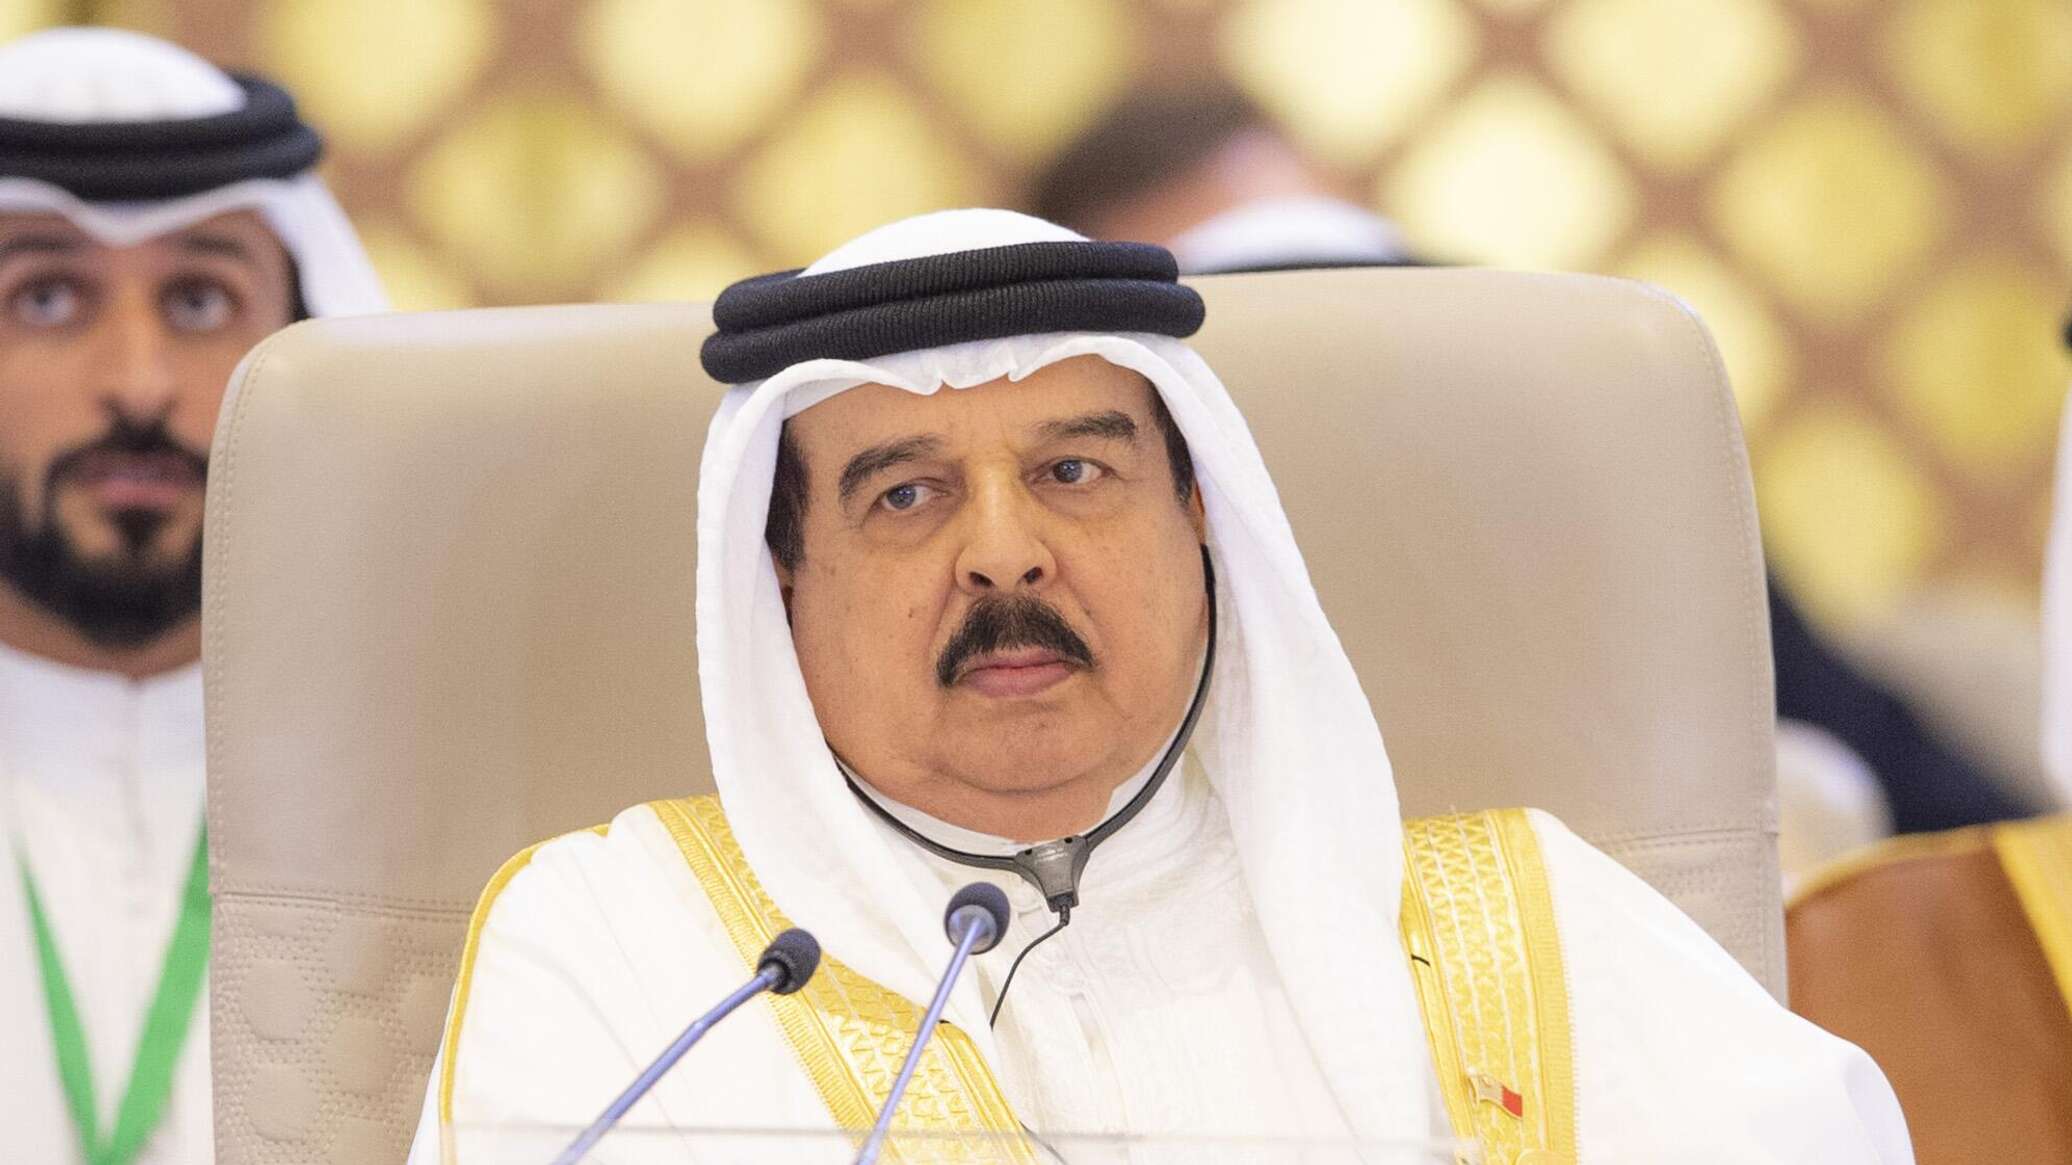 ملك البحرين يفتتح حملة وطنية لإغاثة غزة بالتبرع بـ8.5 مليون دولار